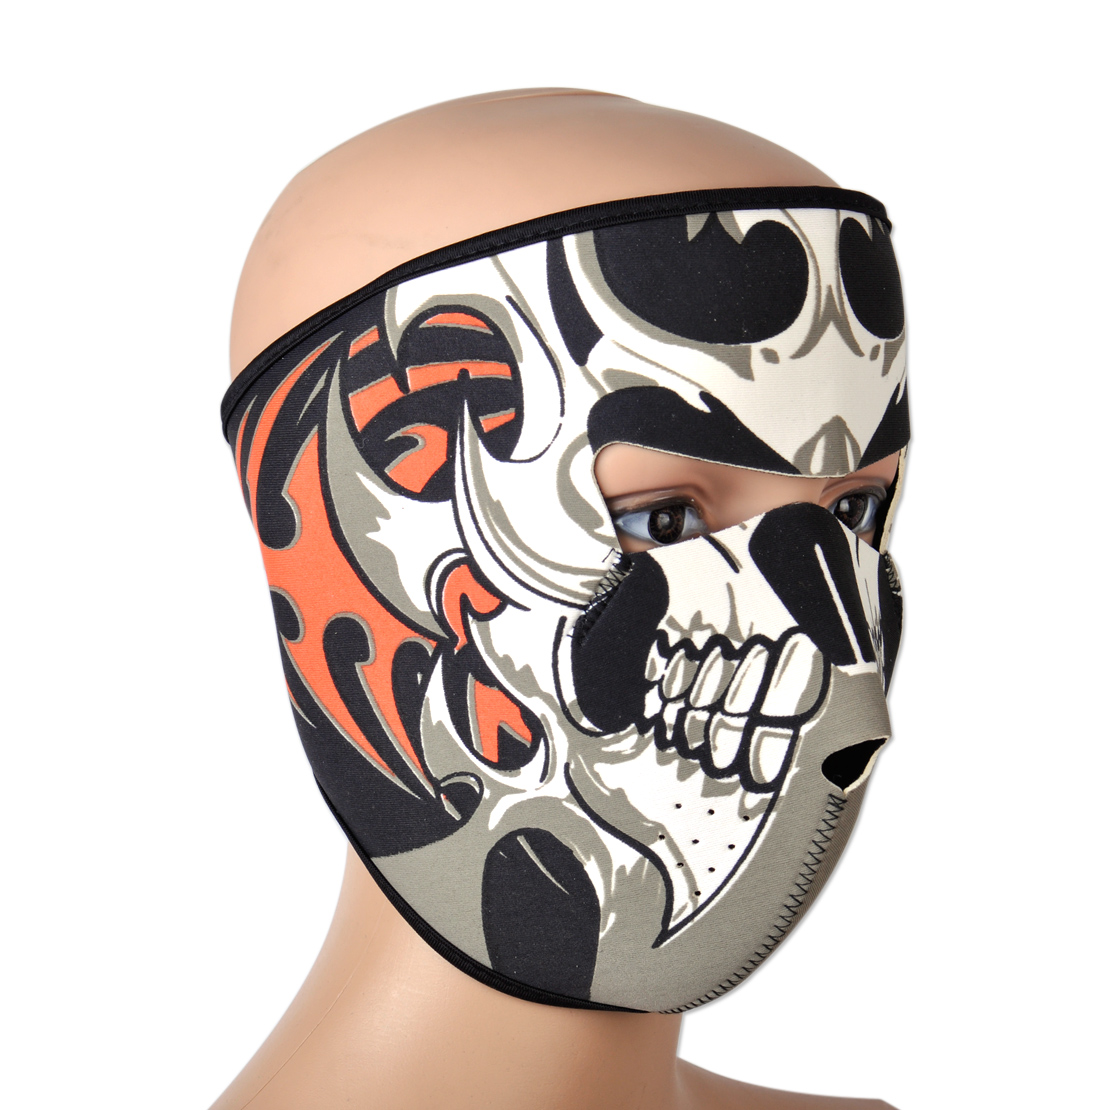 Skull Skeleton Full Face Mask Neoprene Reversible Motorcycle Ski Snow ...